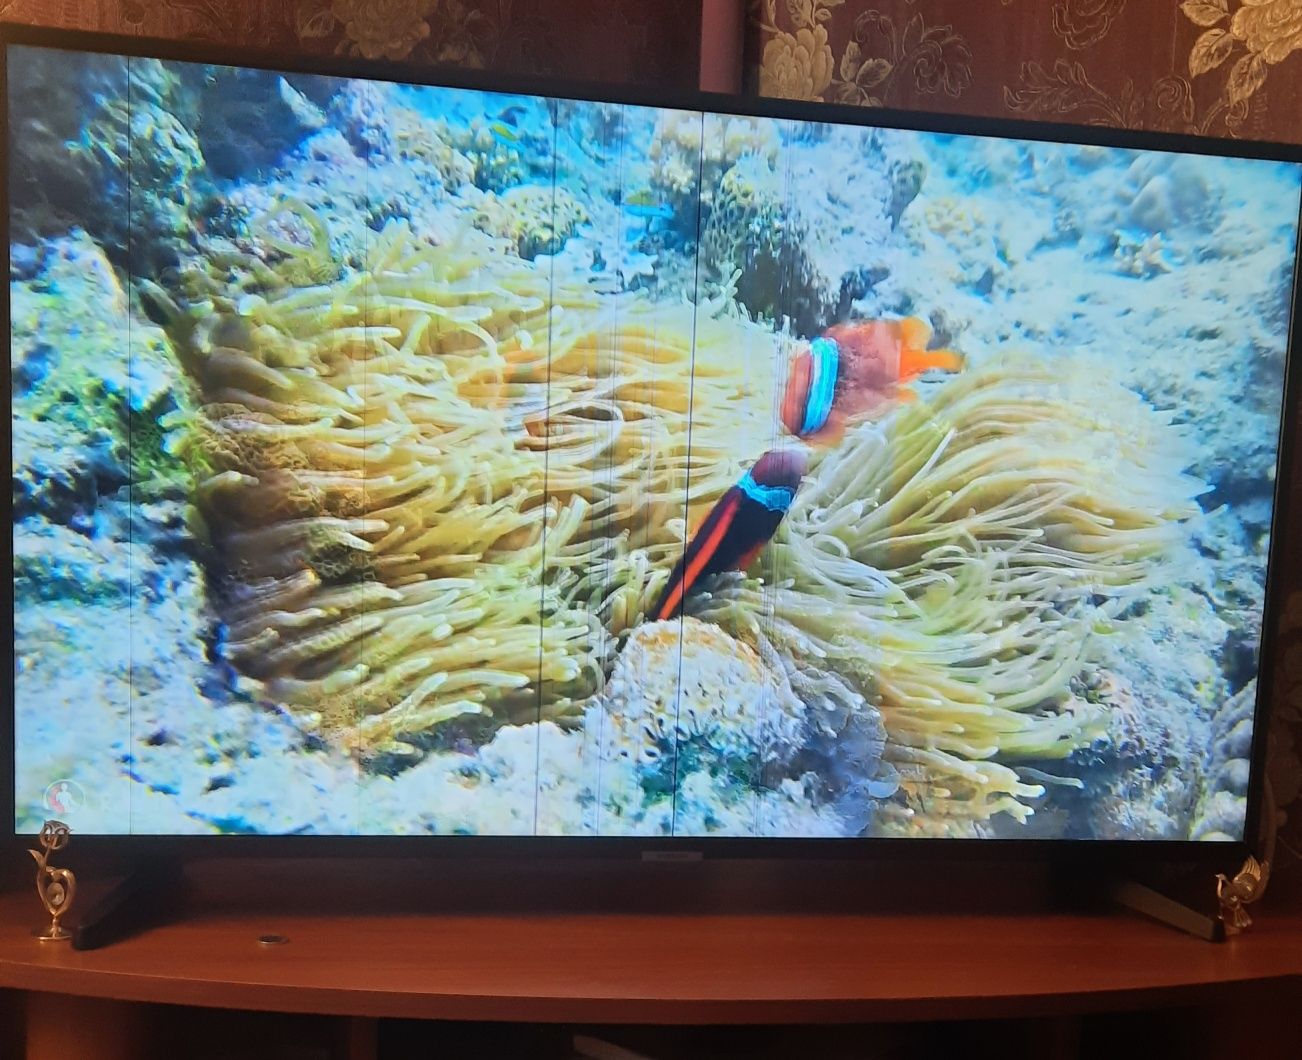 Телевизор смарт Samsung 40' б/у 3500грн.